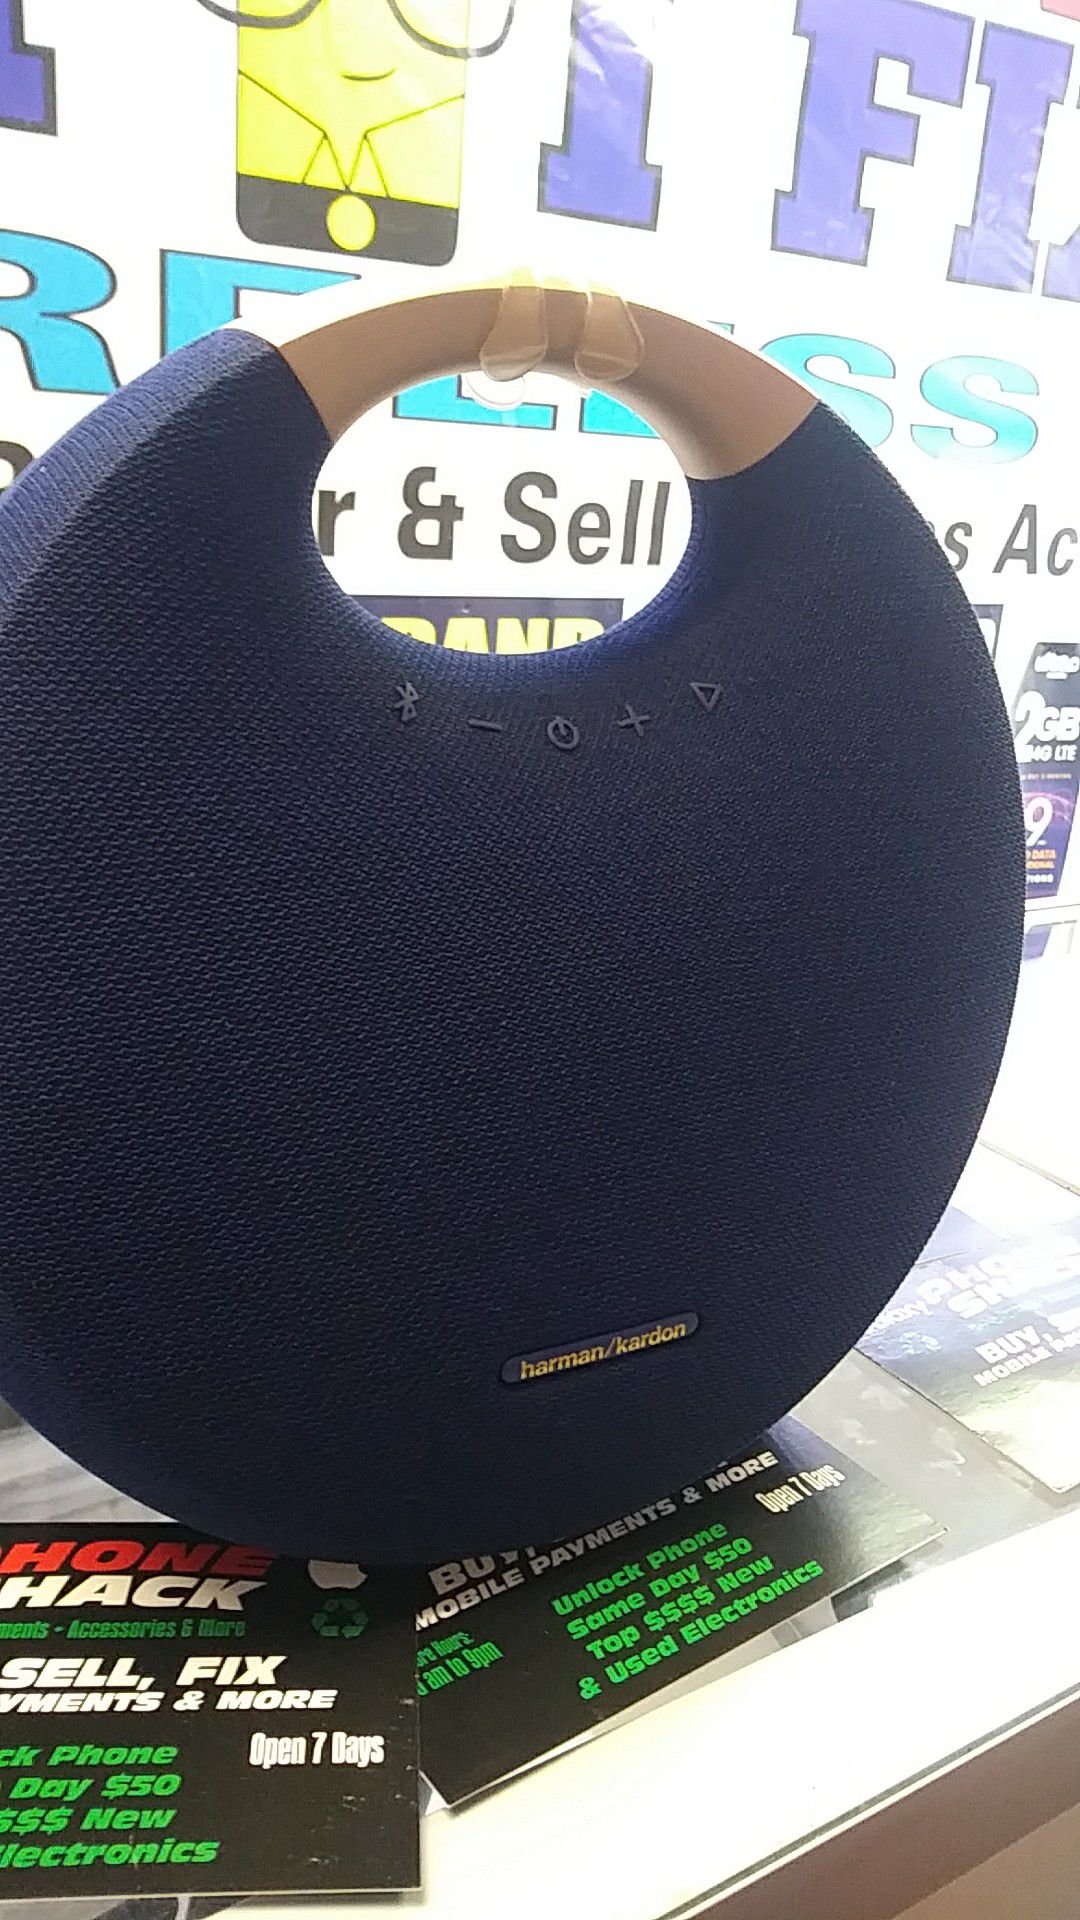 Blue tooth speaker model harmon kardon